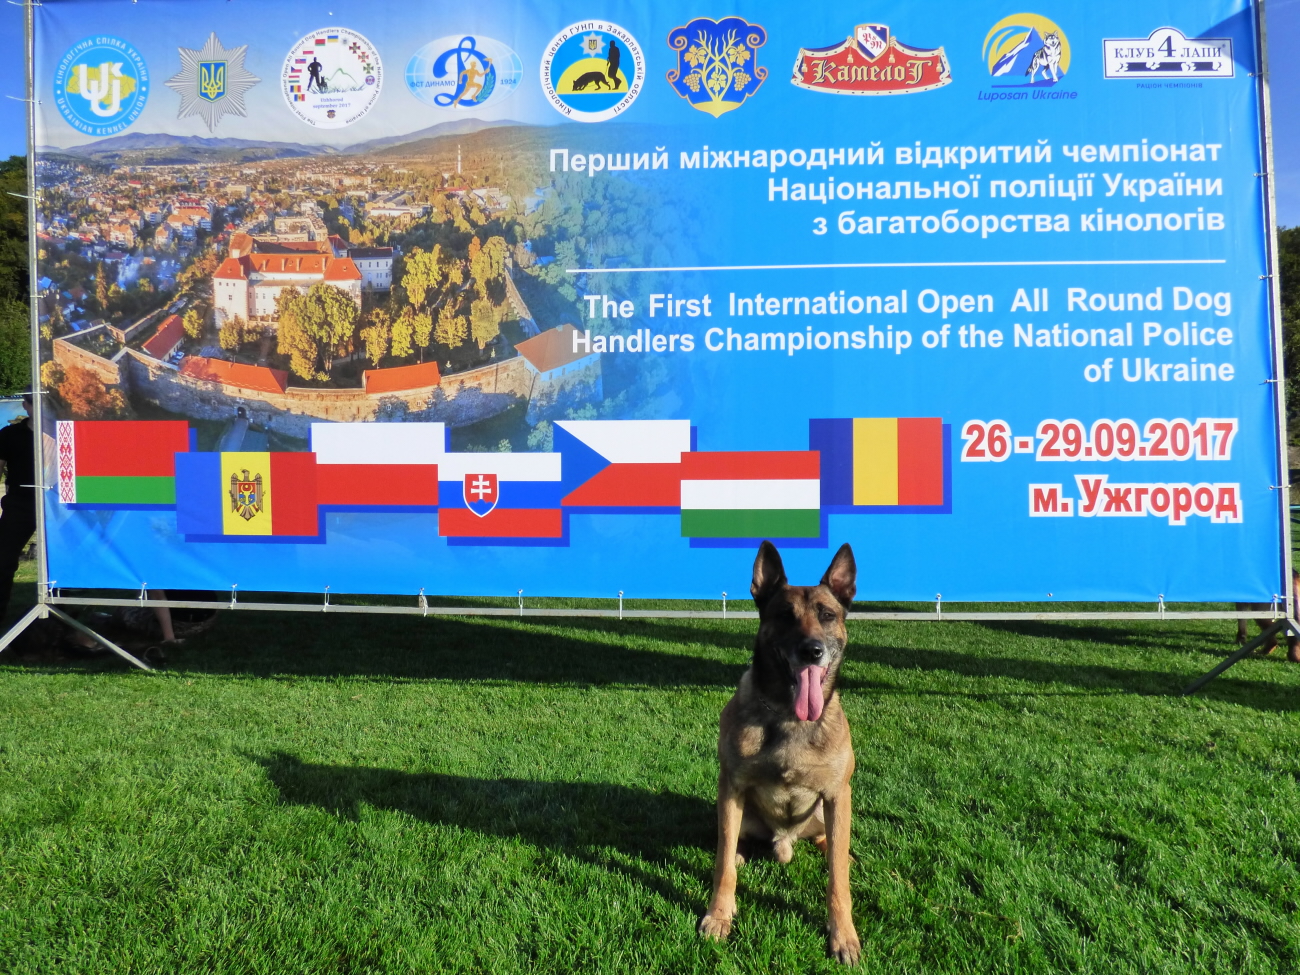 Mezinárodní mistrovství Národní policie Ukrajiny ve služební kynologii